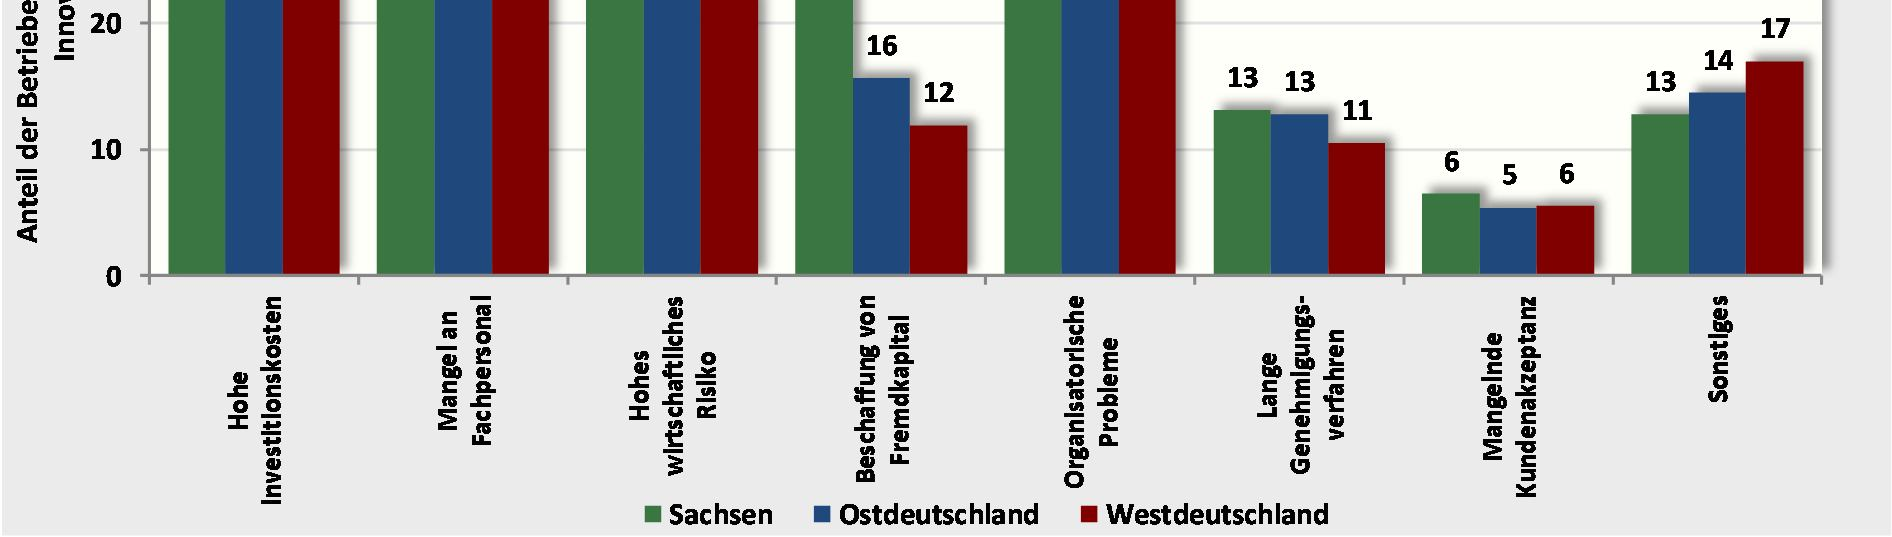 Probleme bei der Beschaffung von Fremdkapital wurden von sächsischen im Vergleich zu ost- und westdeutschen Betrieben etwa doppelt so häufig als Innovationshemmnis genannt.